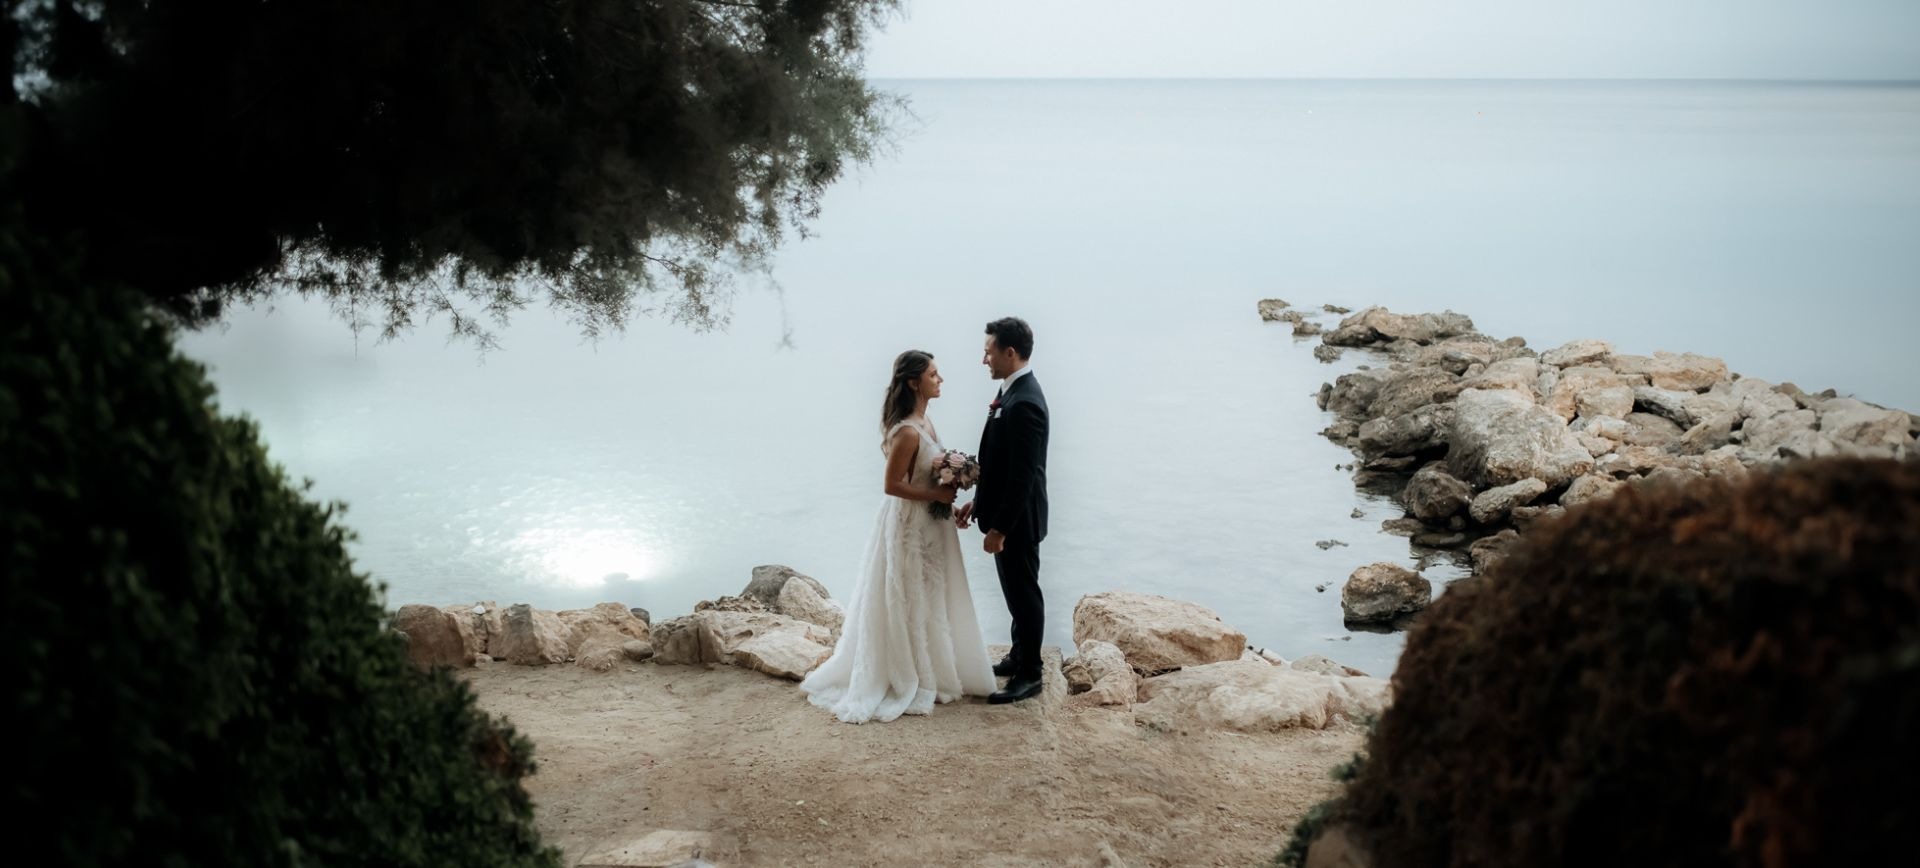 Adventure Cyprus Wedding Elopement